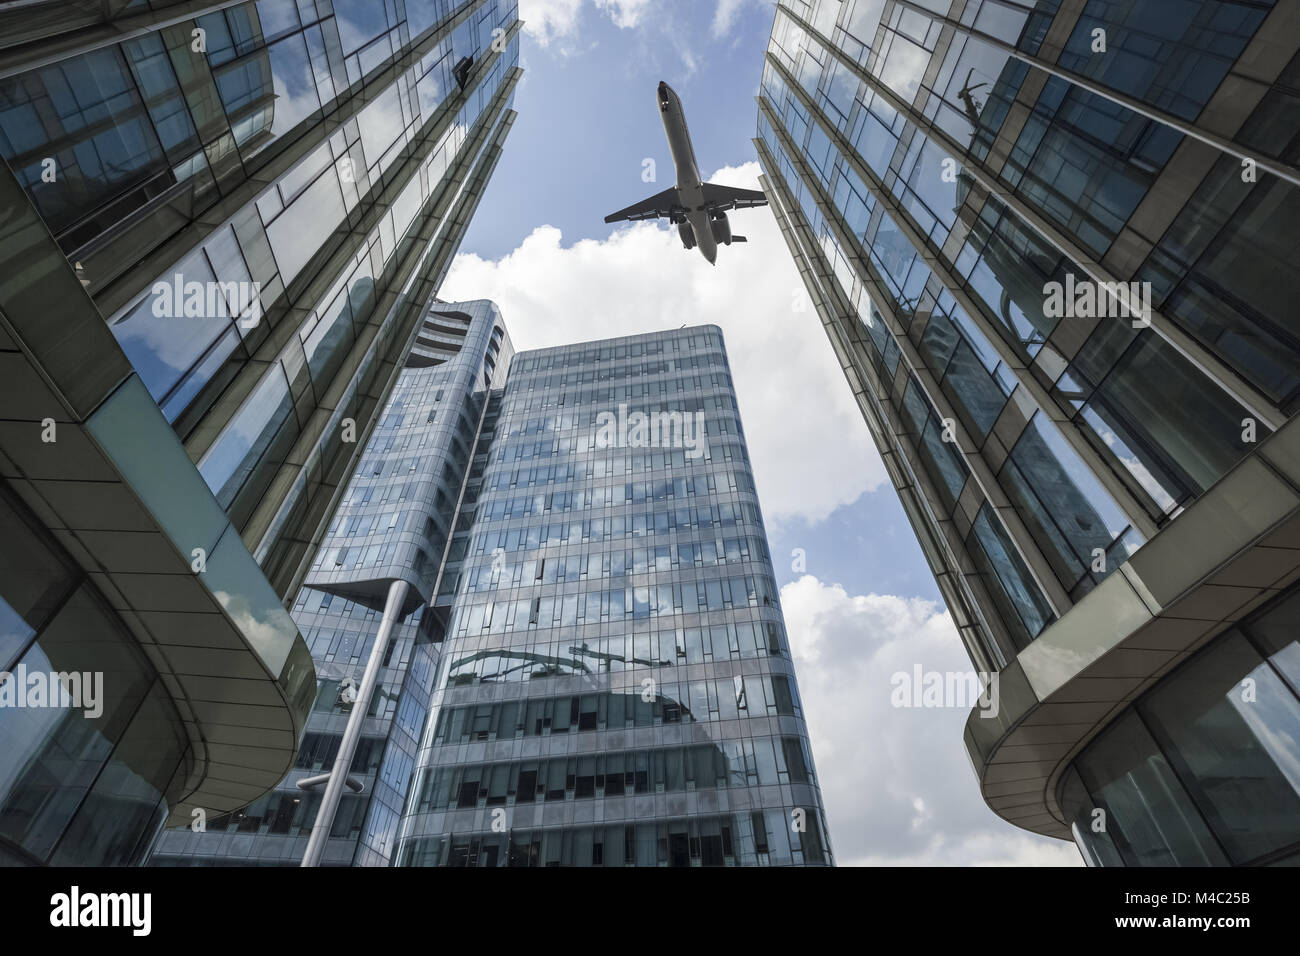 L'avion volait au dessus du bâtiment moderne en verre Banque D'Images